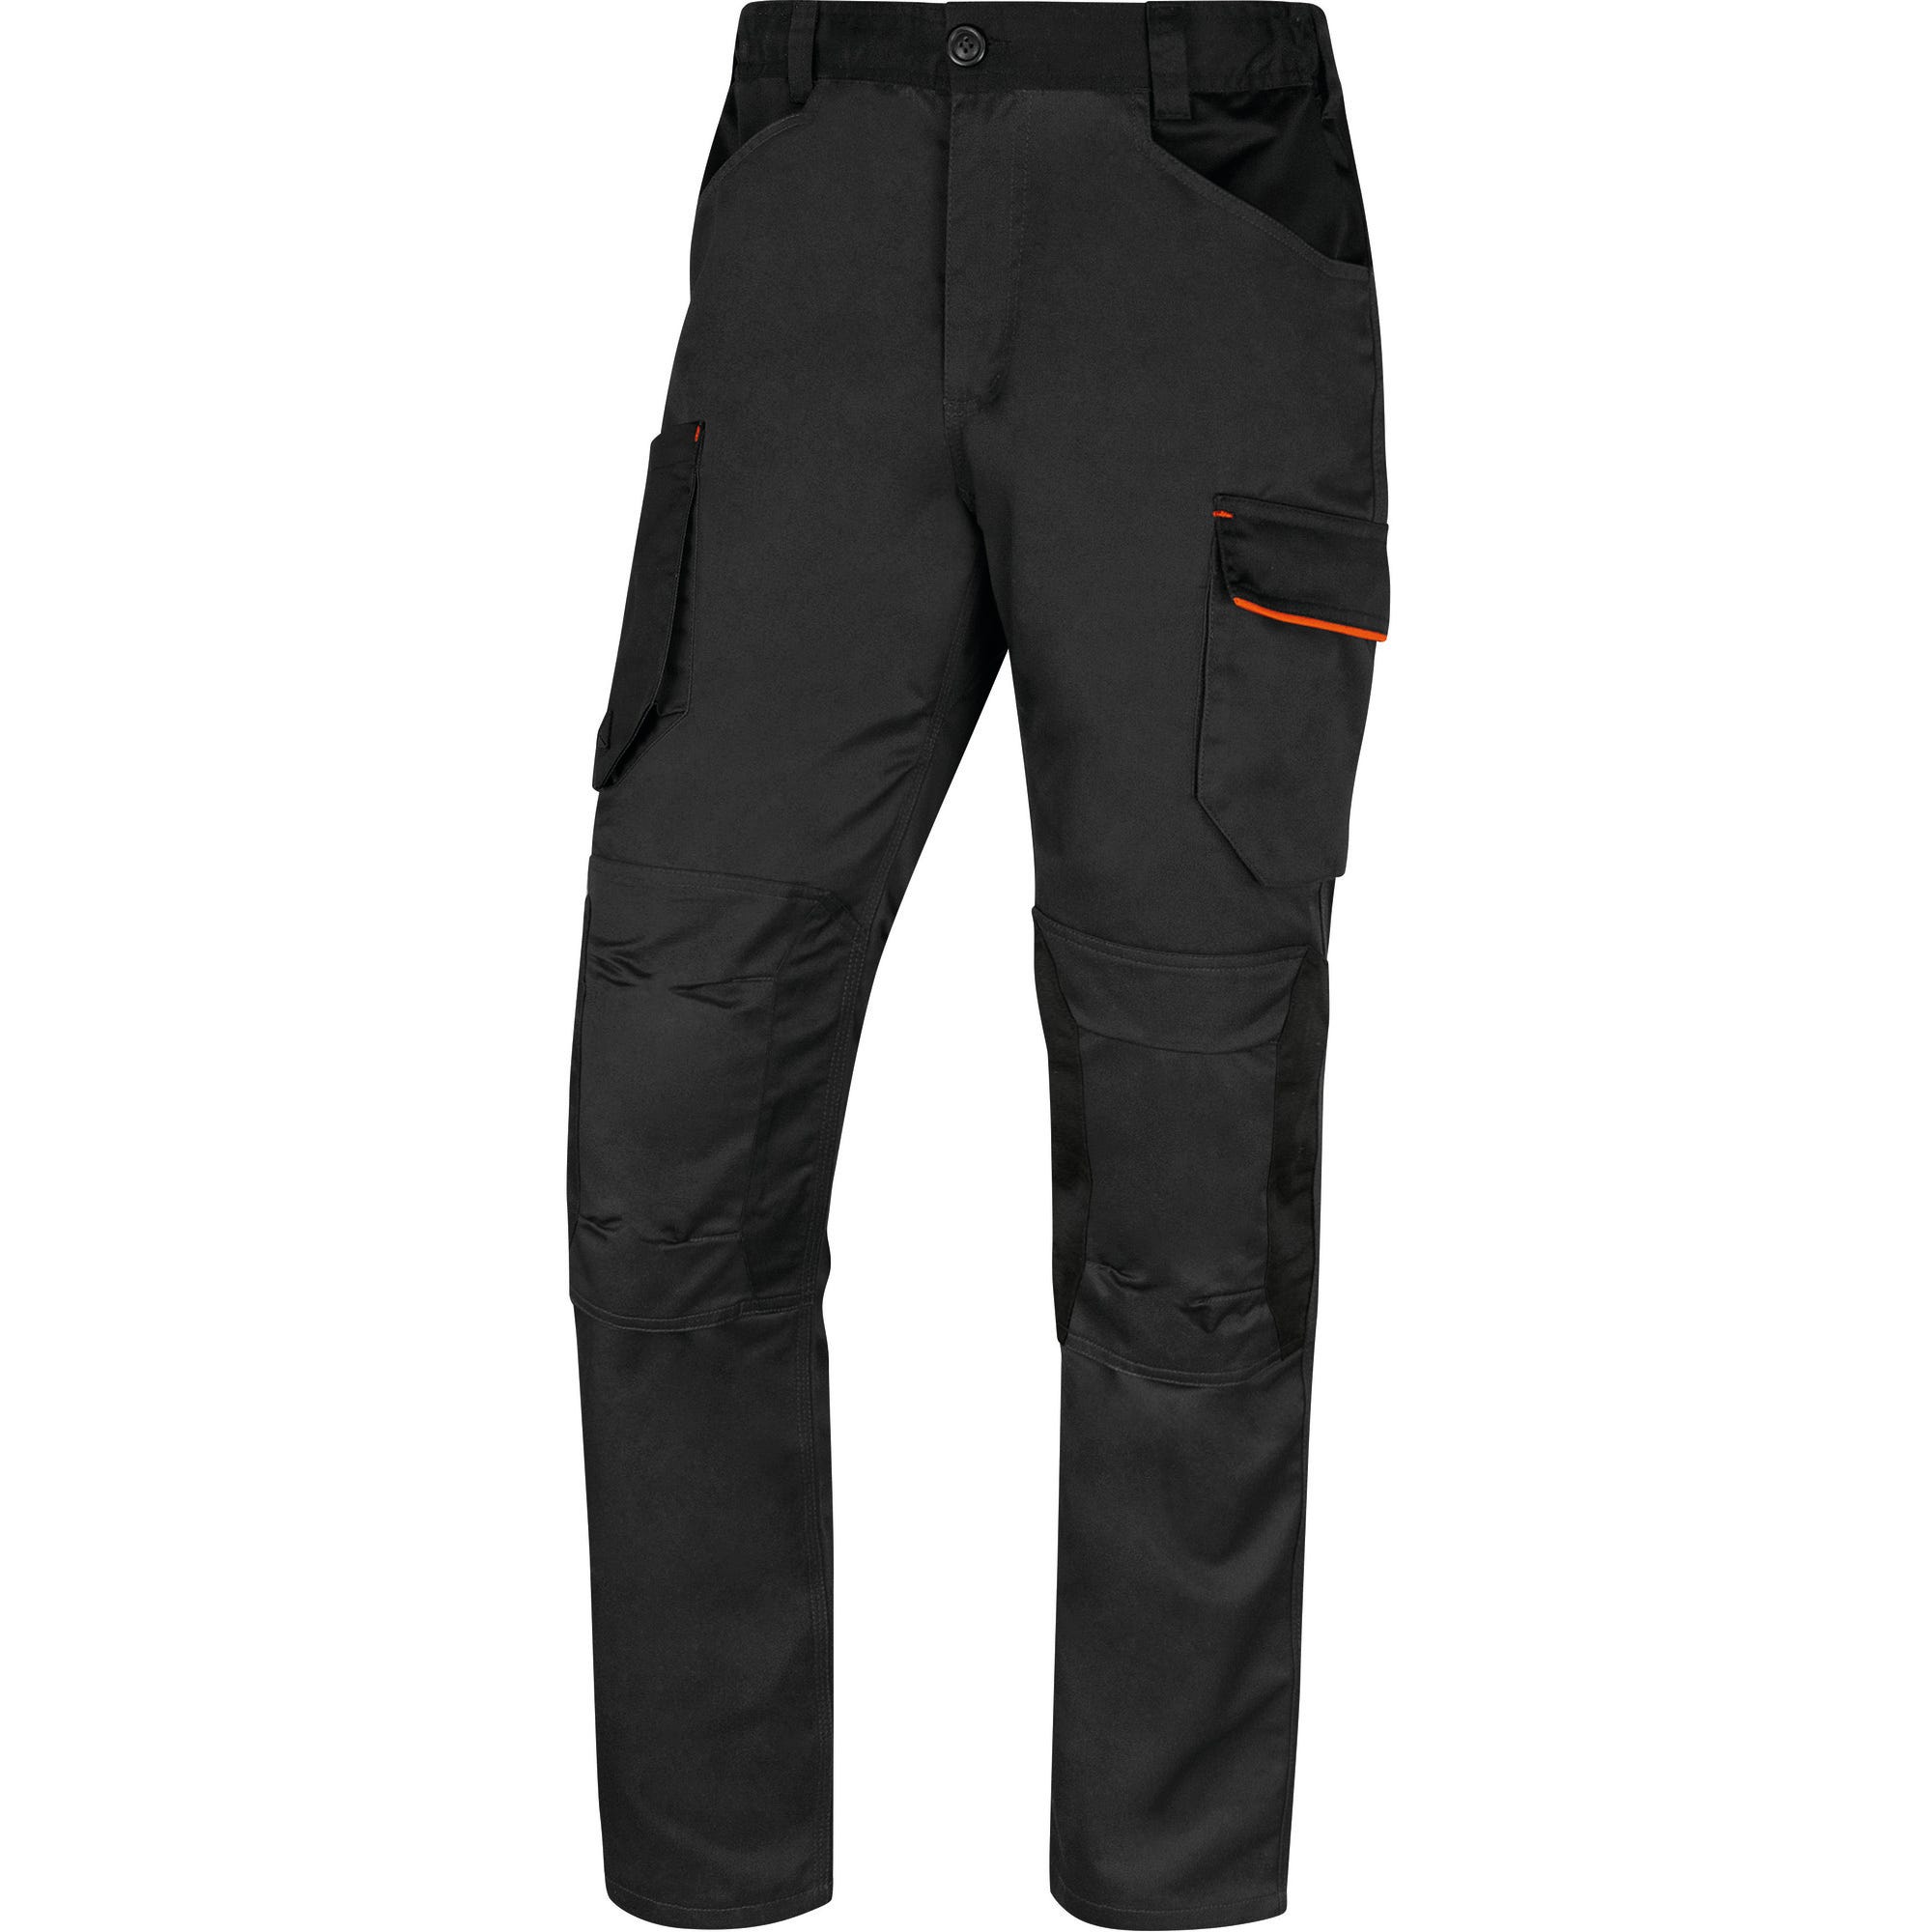 Pantalon de travail Gris/Orange T.4XL MACH2 - DELTA PLUS 0